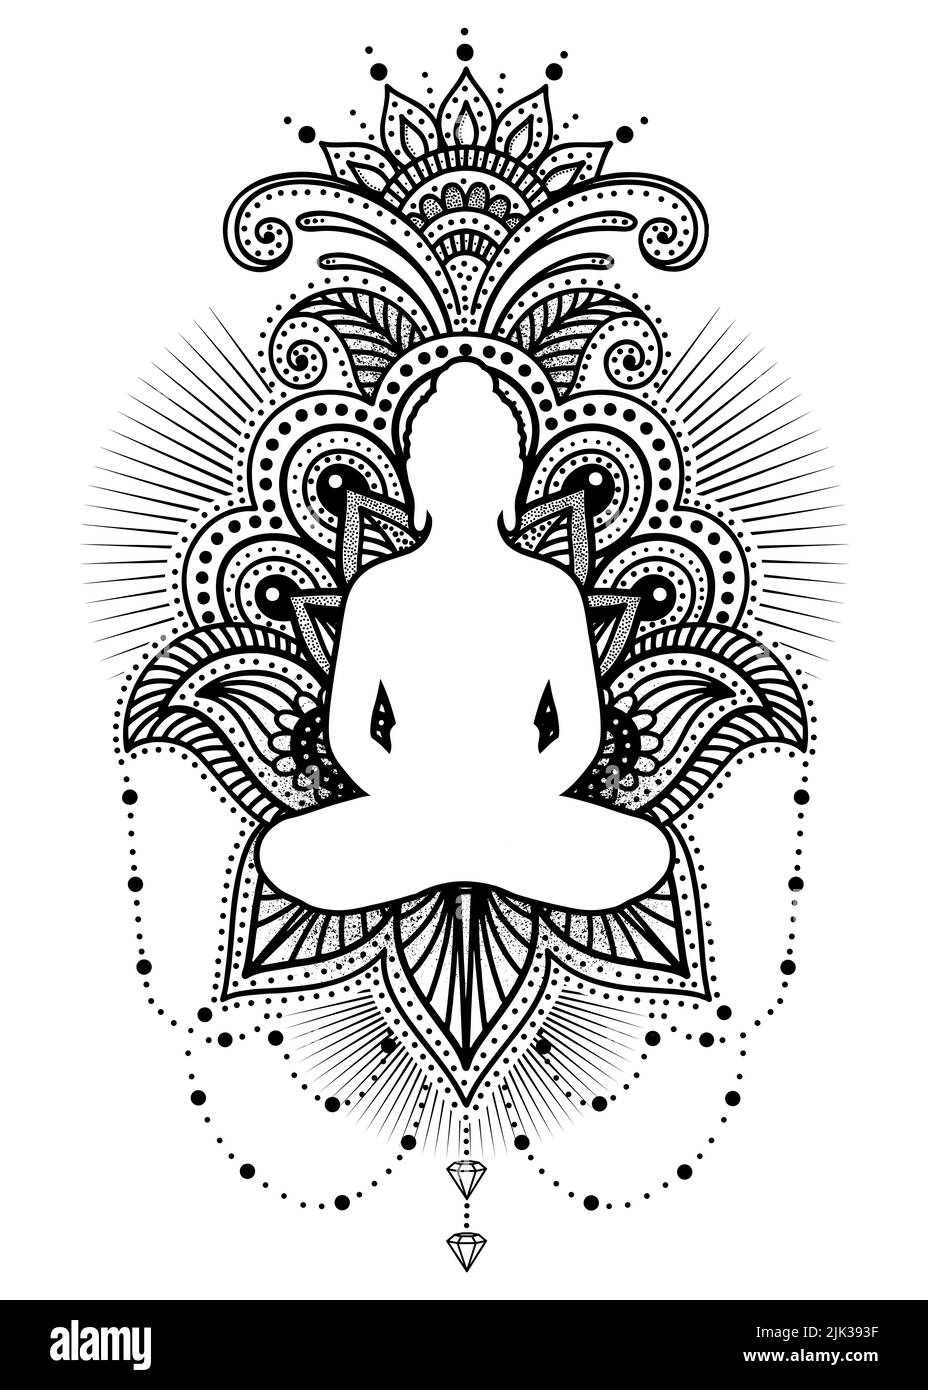 Bouddha de yoga - graphique de méditation spirituelle Banque D'Images